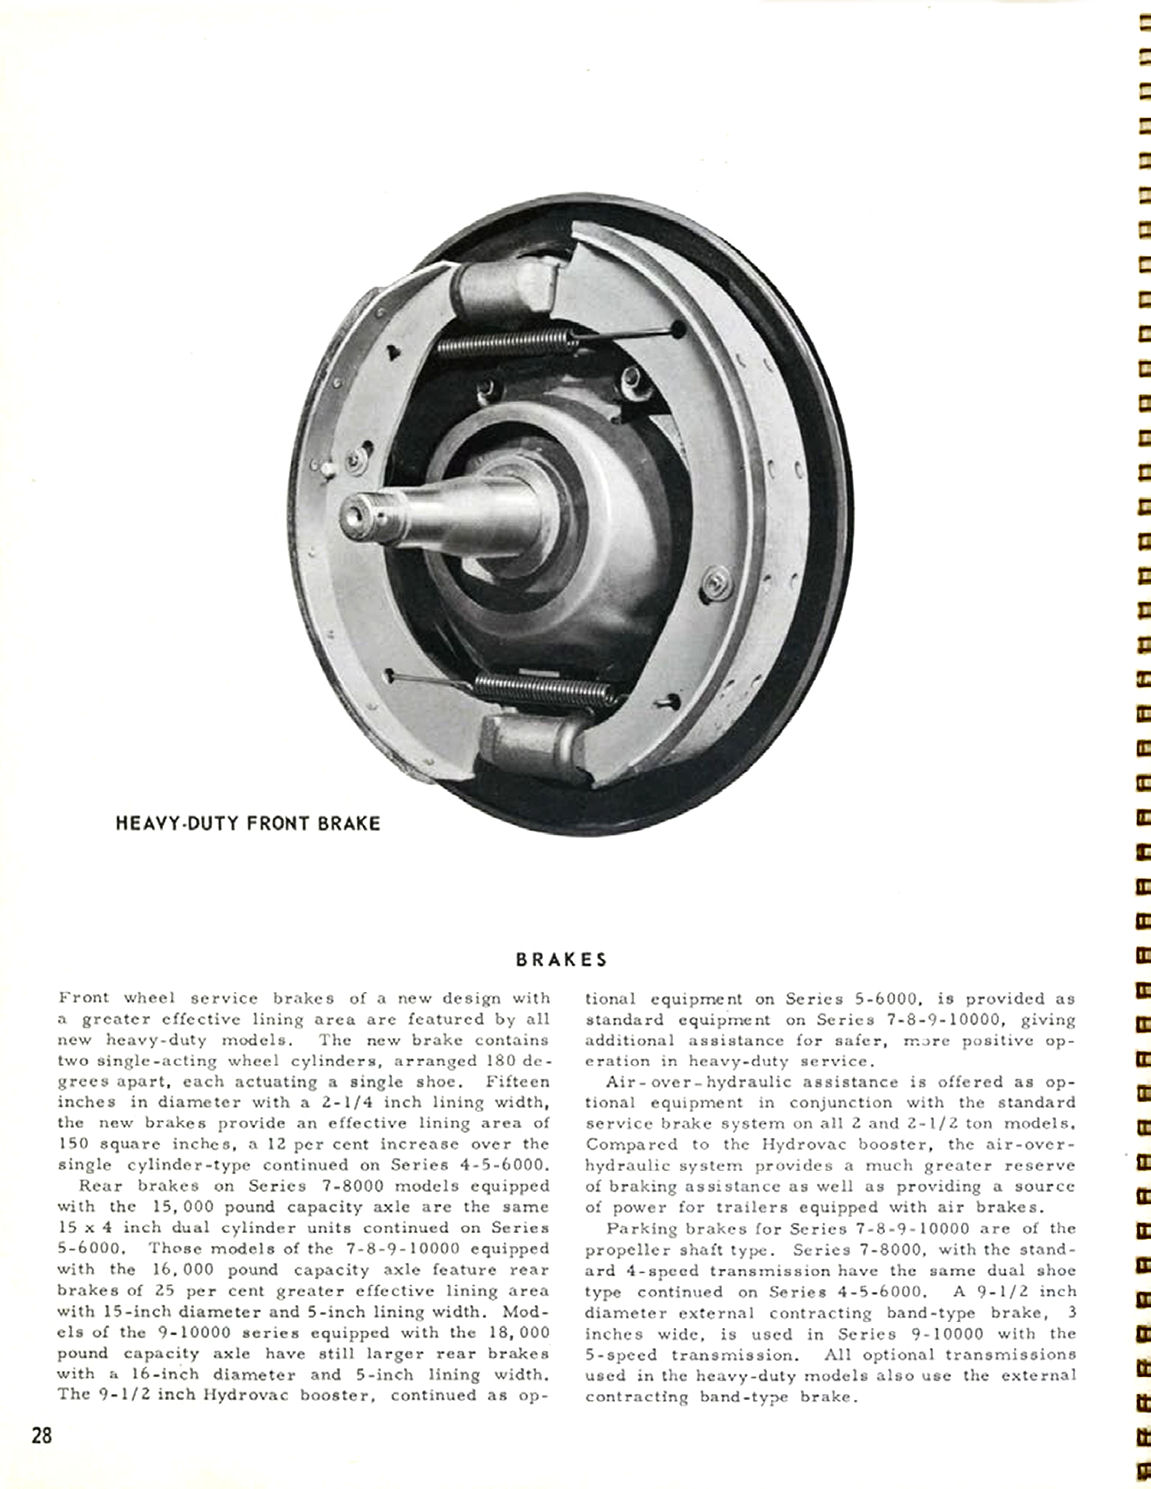 1956_Chevrolet_Truck_Engineering_Features-28